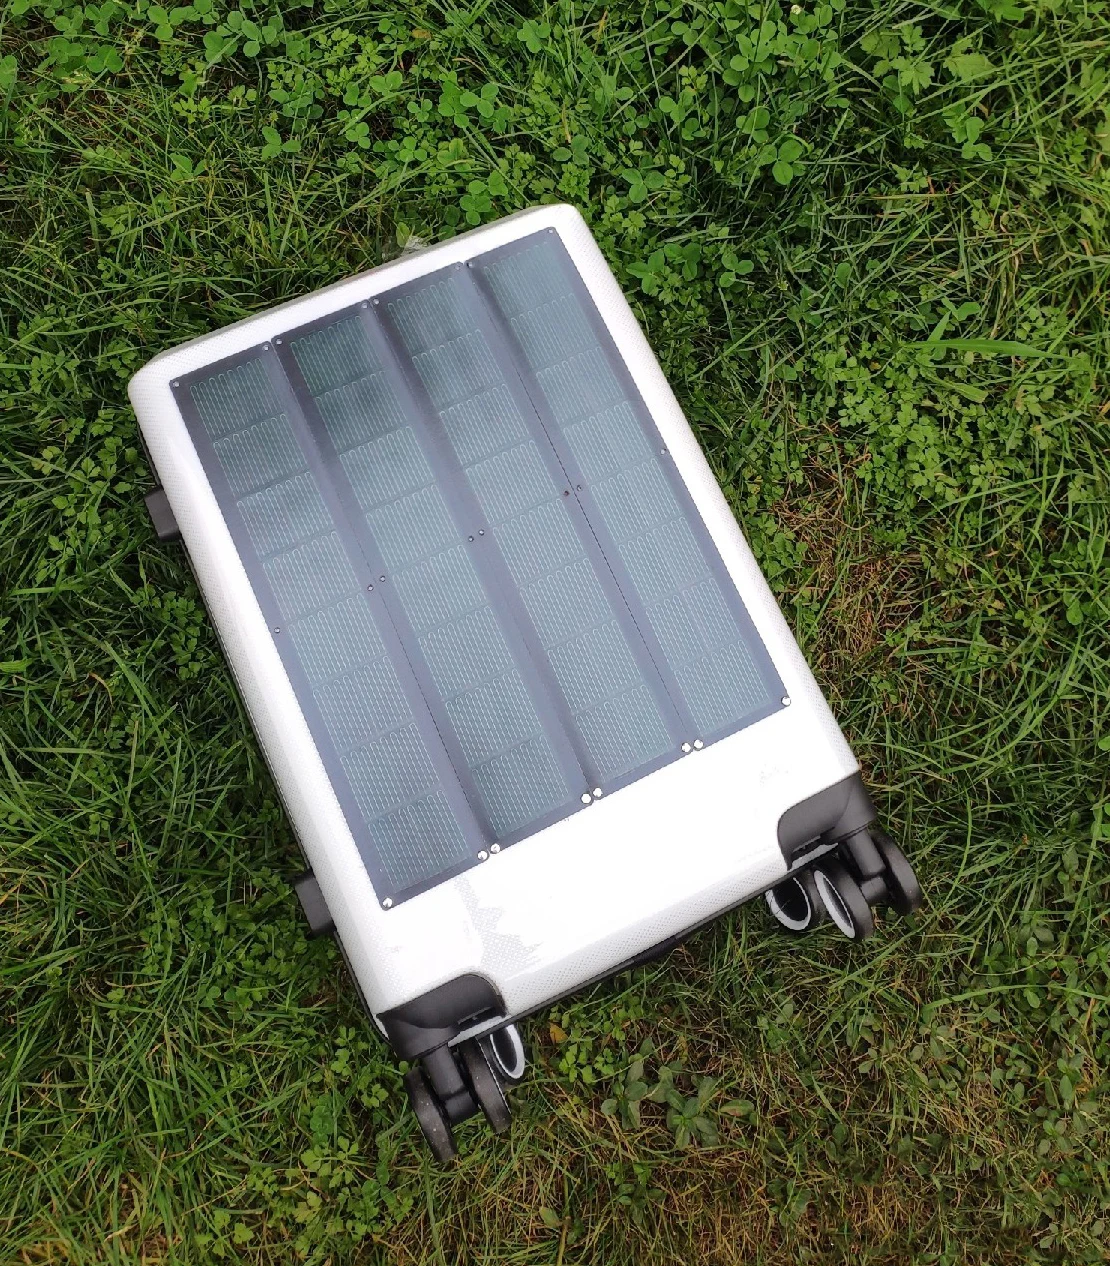 Pannello flessibile di grandi dimensioni CIGS di energia solare pannello solare a Film sottile caricabatterie fai-da-te cella solare fotovoltaica flex impermeabile 2W7V